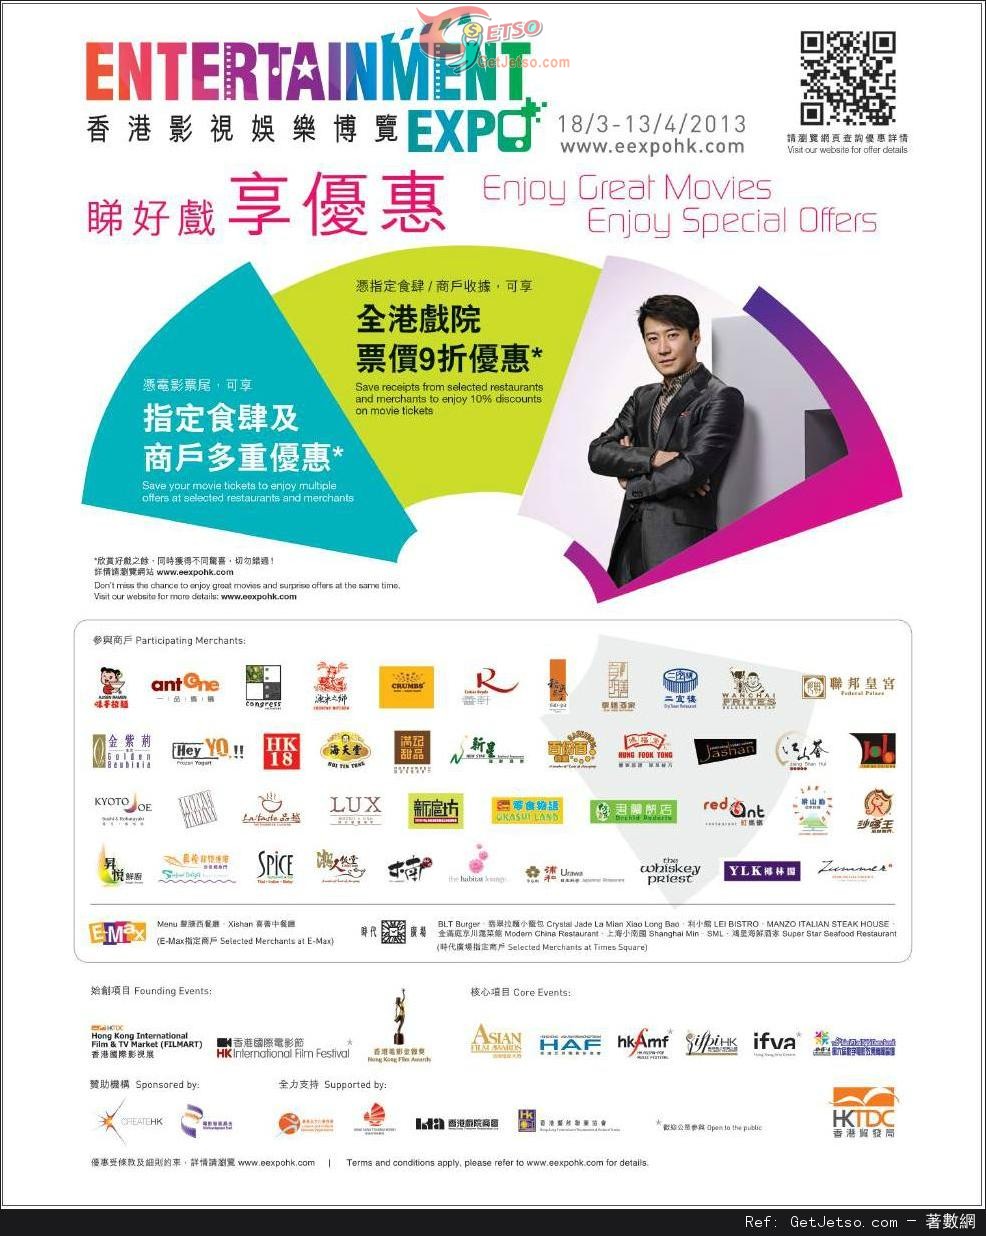 香港影視娛樂博覽票尾享全港戲院票價9折優惠(至13年4月13日)圖片1